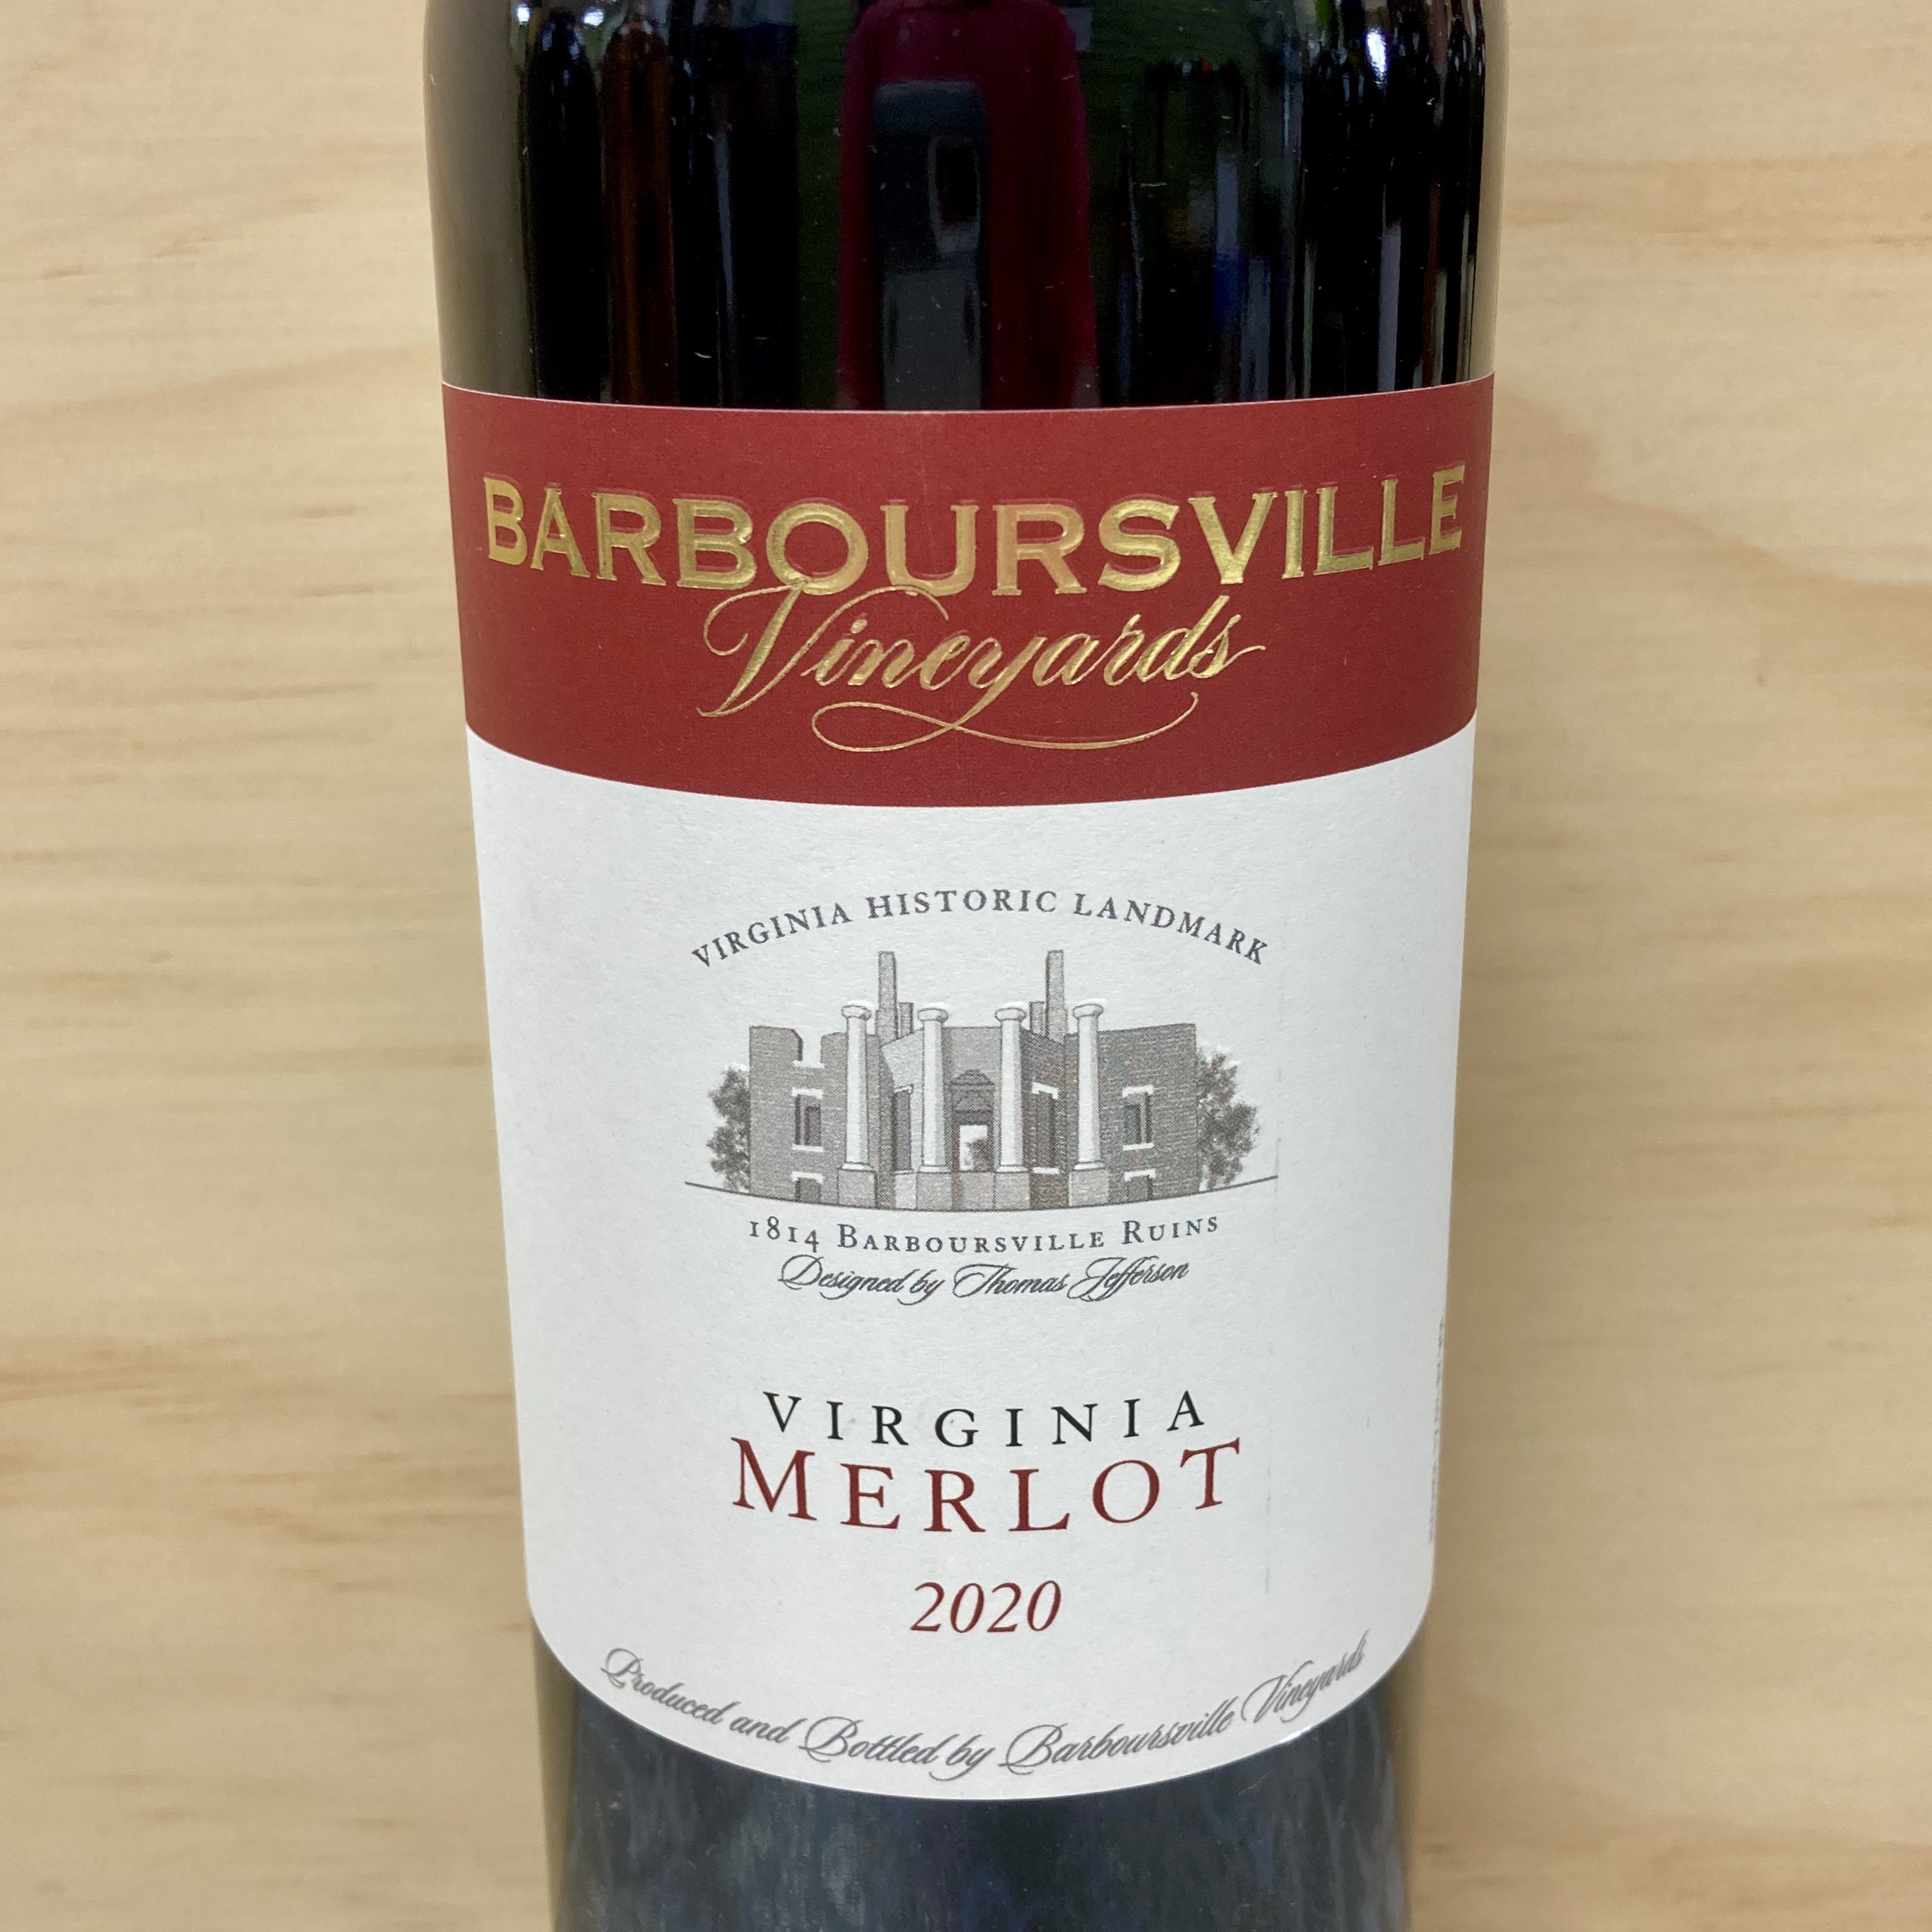 Barboursville Merlot 2020